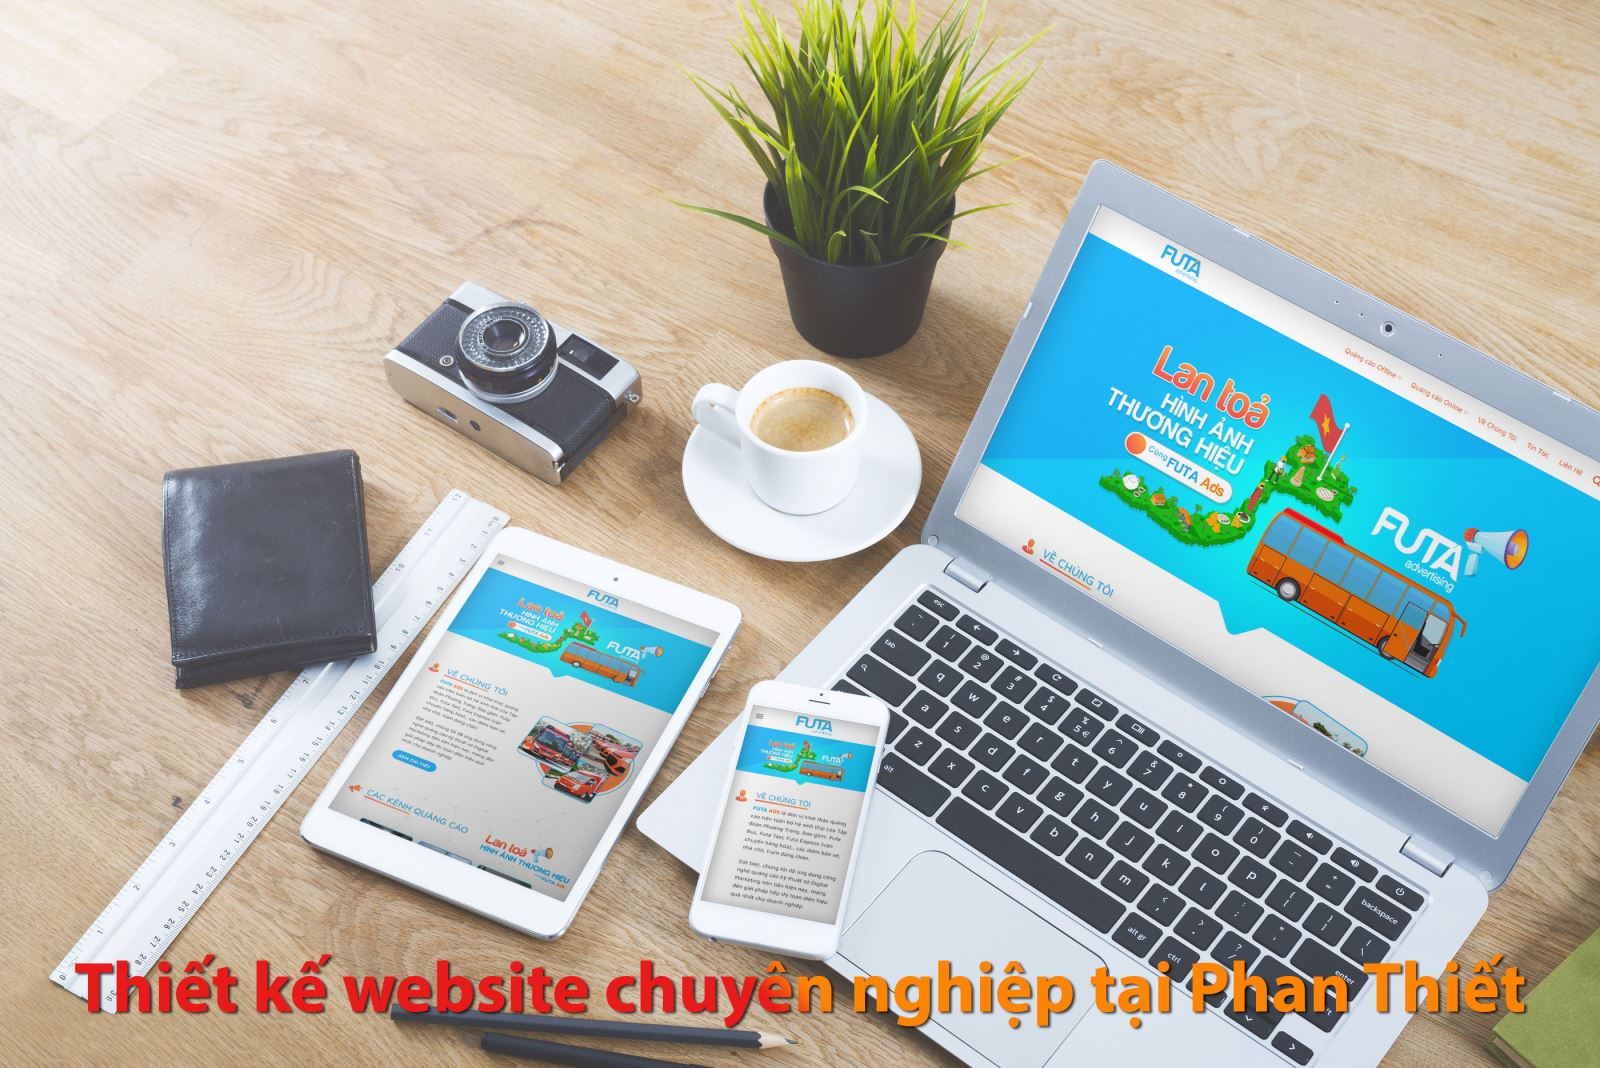 Thiết kế website Phan Thiết, Bình thuận chuyên nghiệp